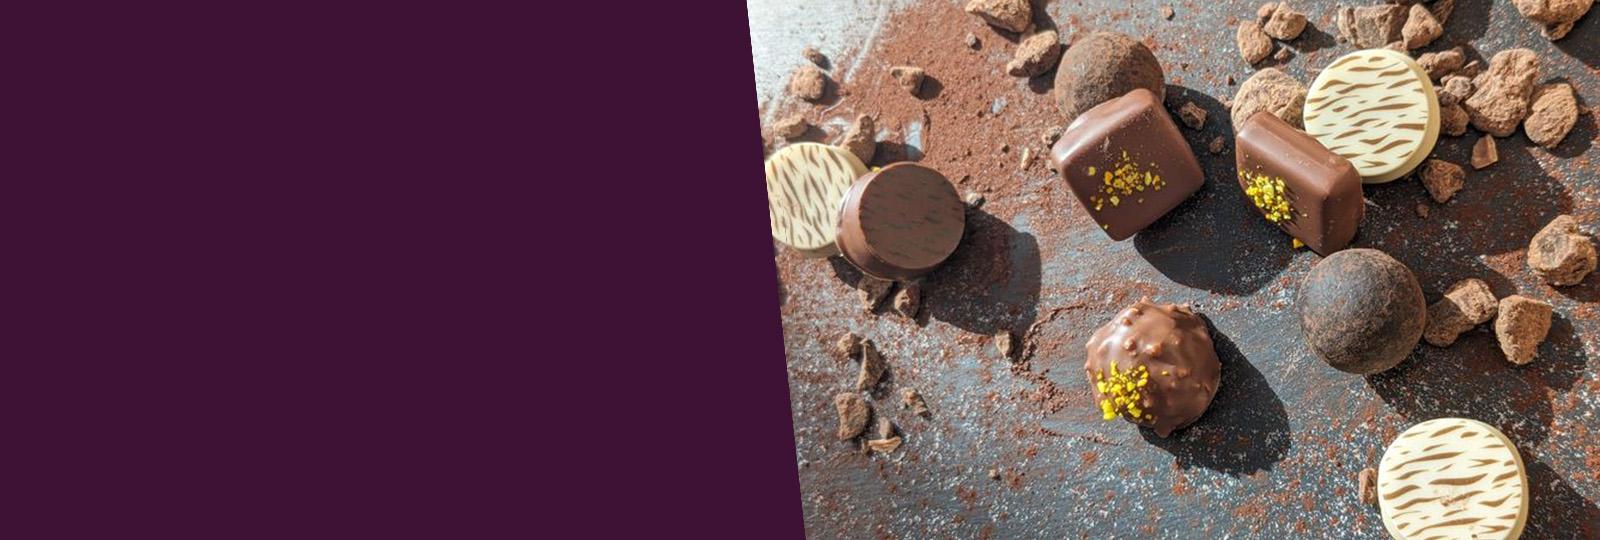 Schaal Chocolatier - Fabricant de Chocolat pour les Chocolatiers